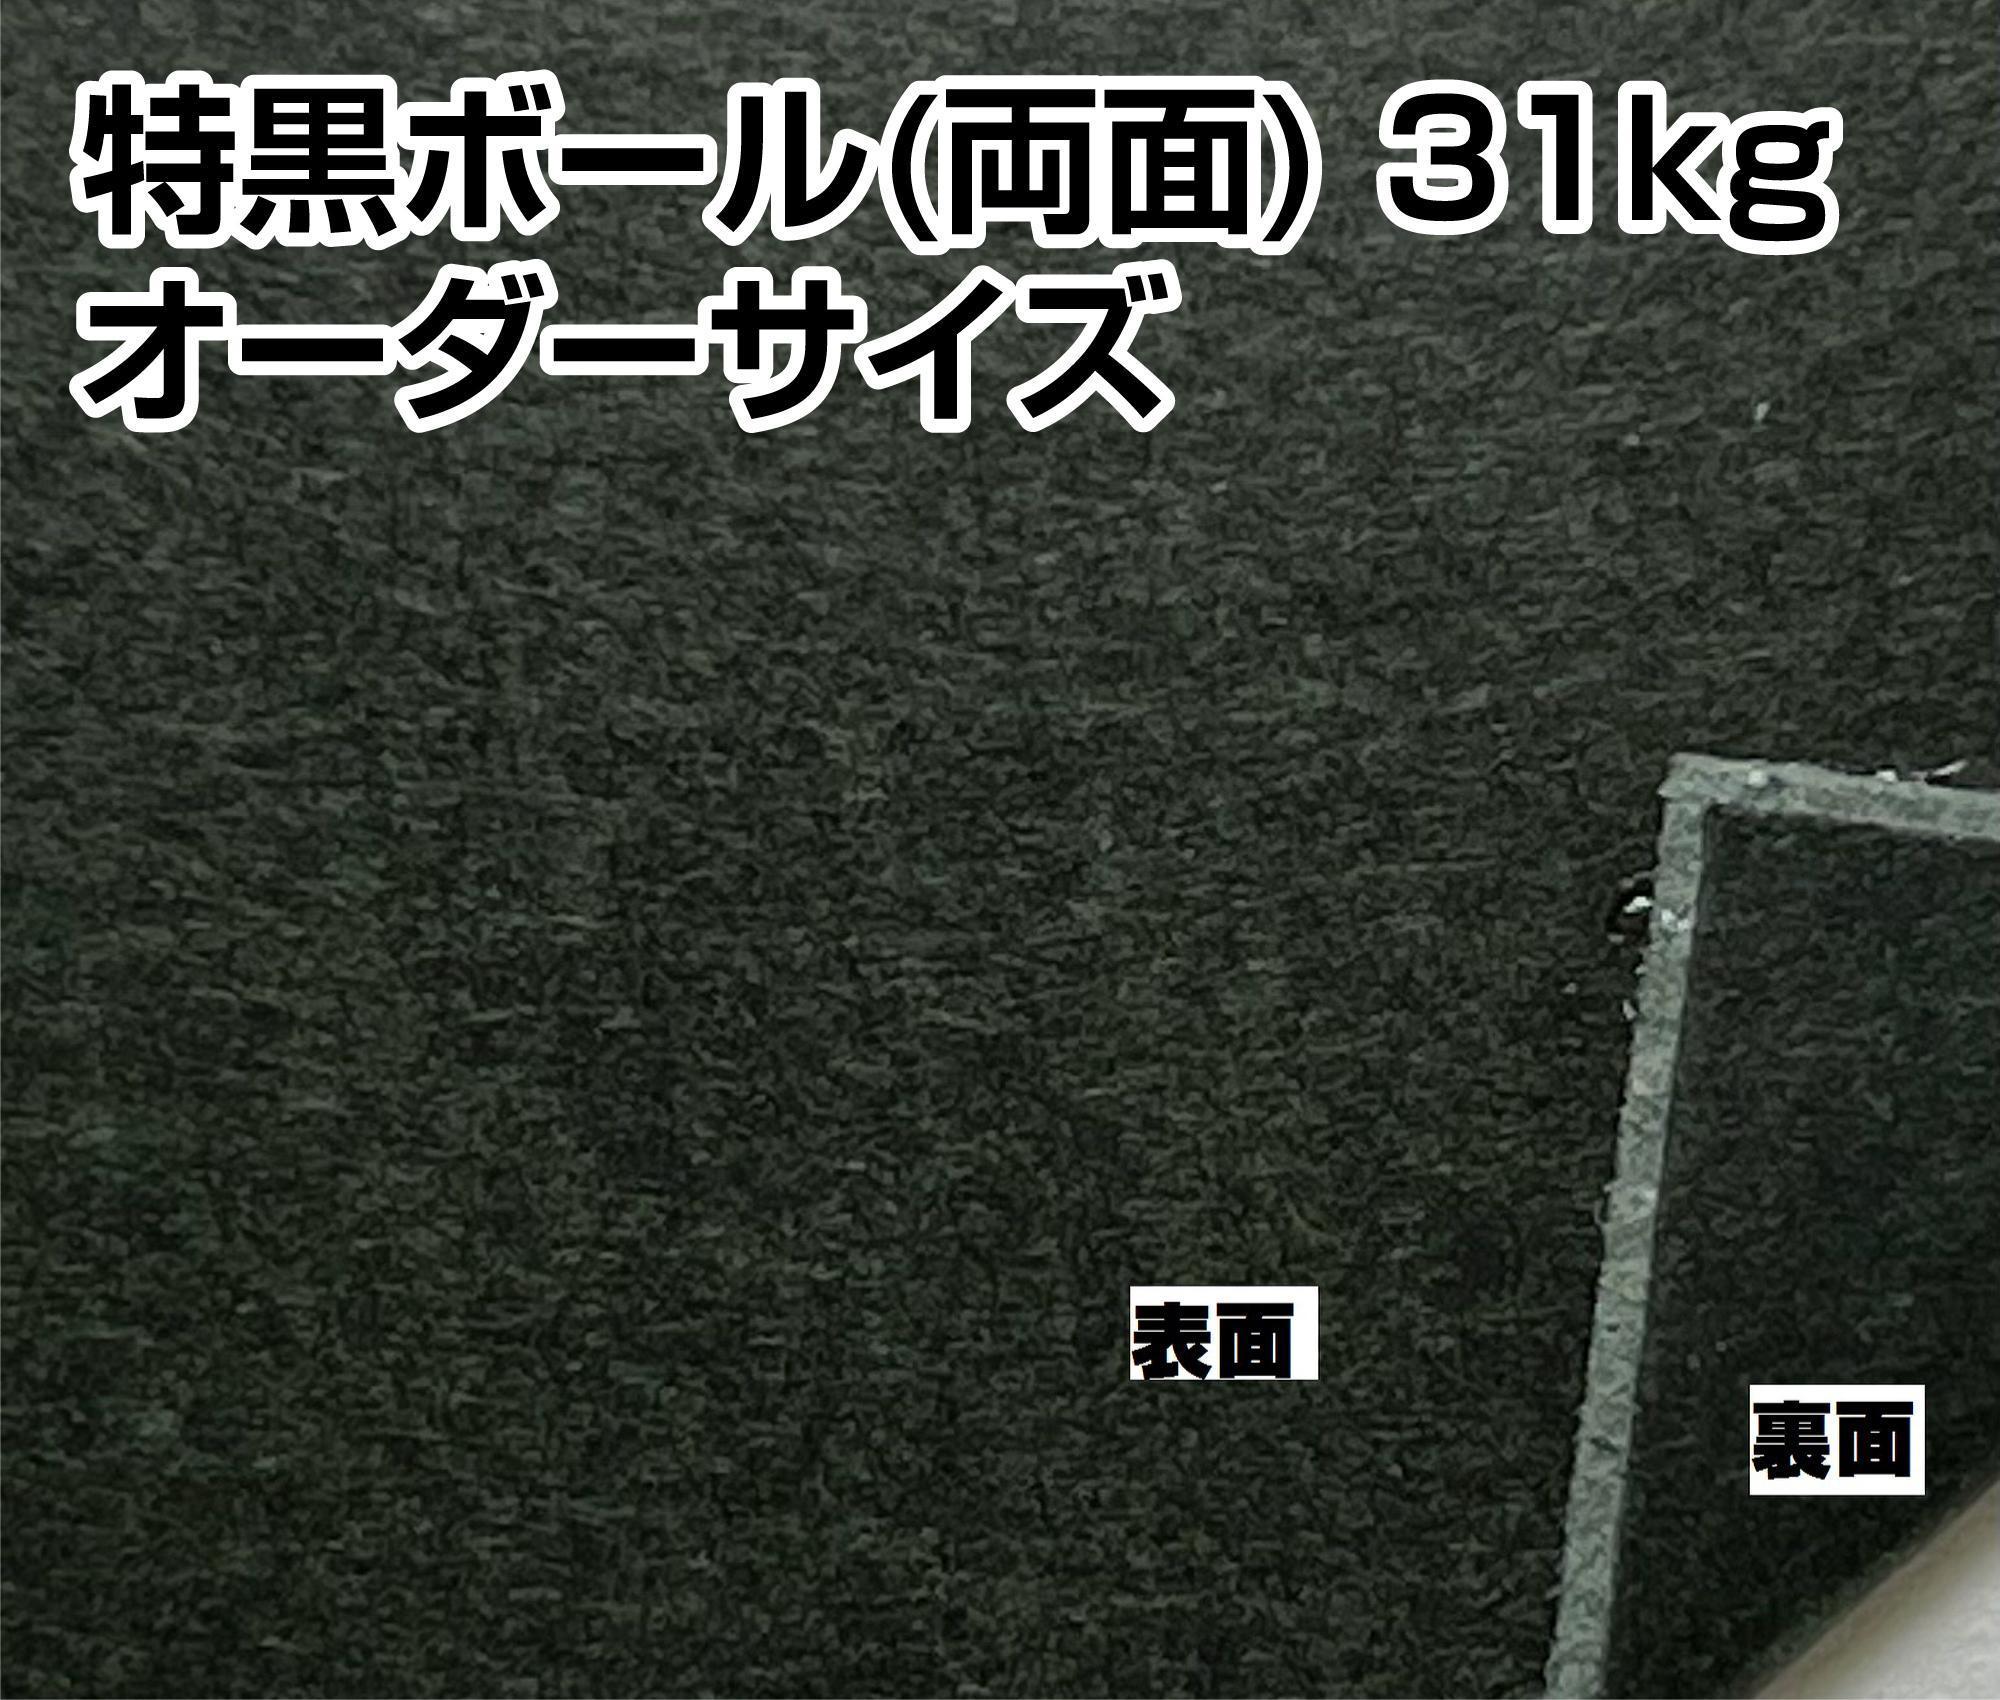 特黒ボール(両面) 31kg(350g/m2) オーダーカット